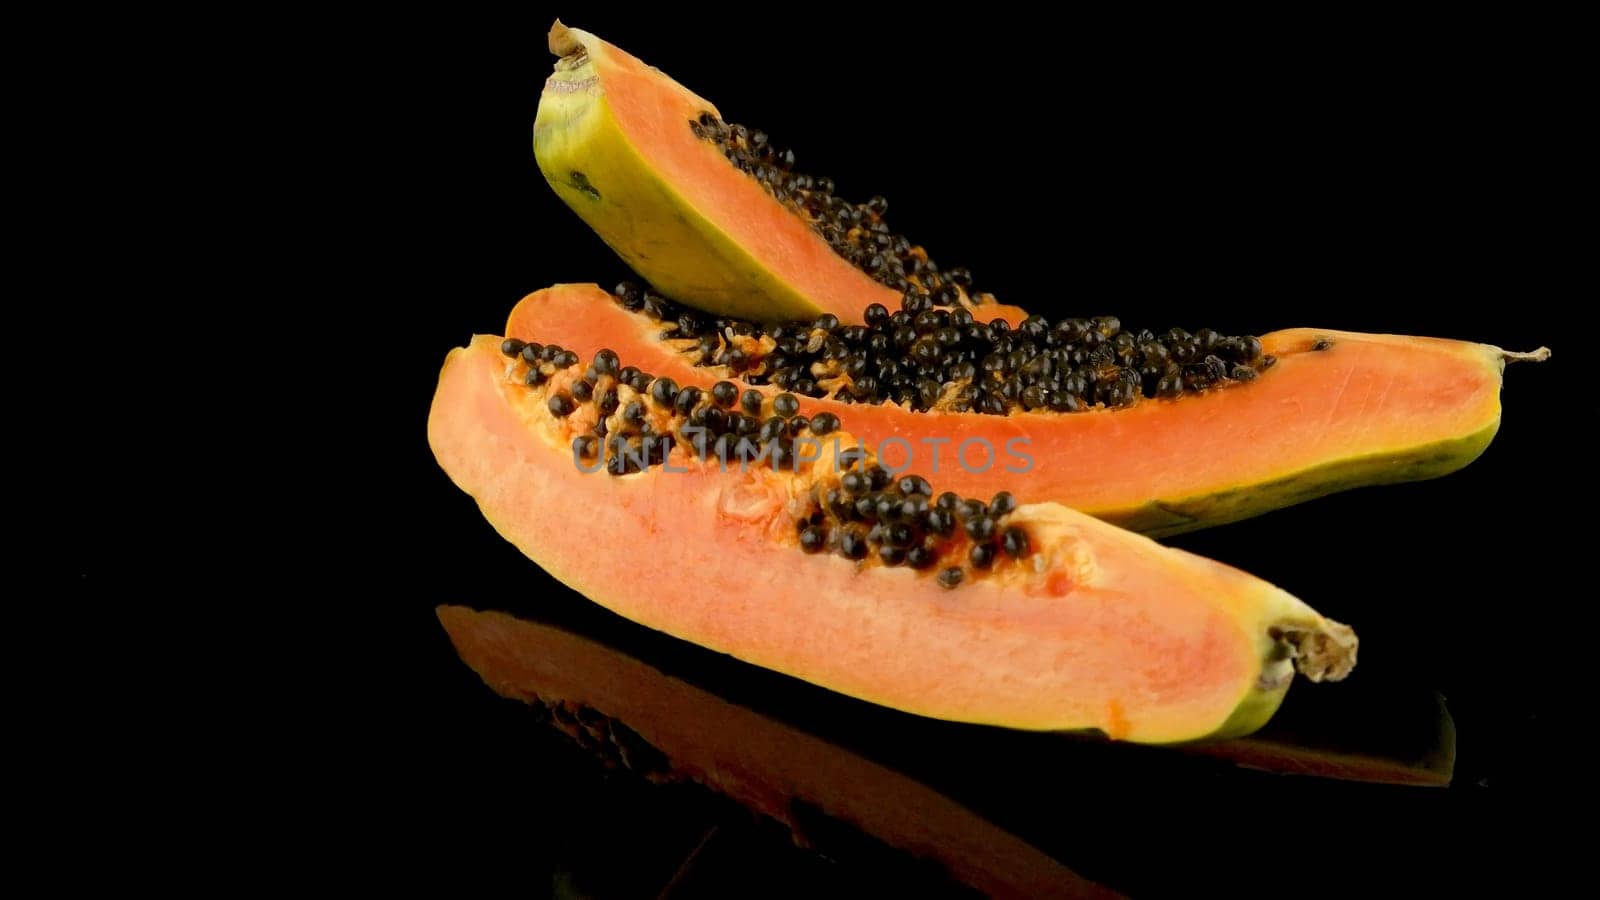 Slices of sweet papaya on black background.